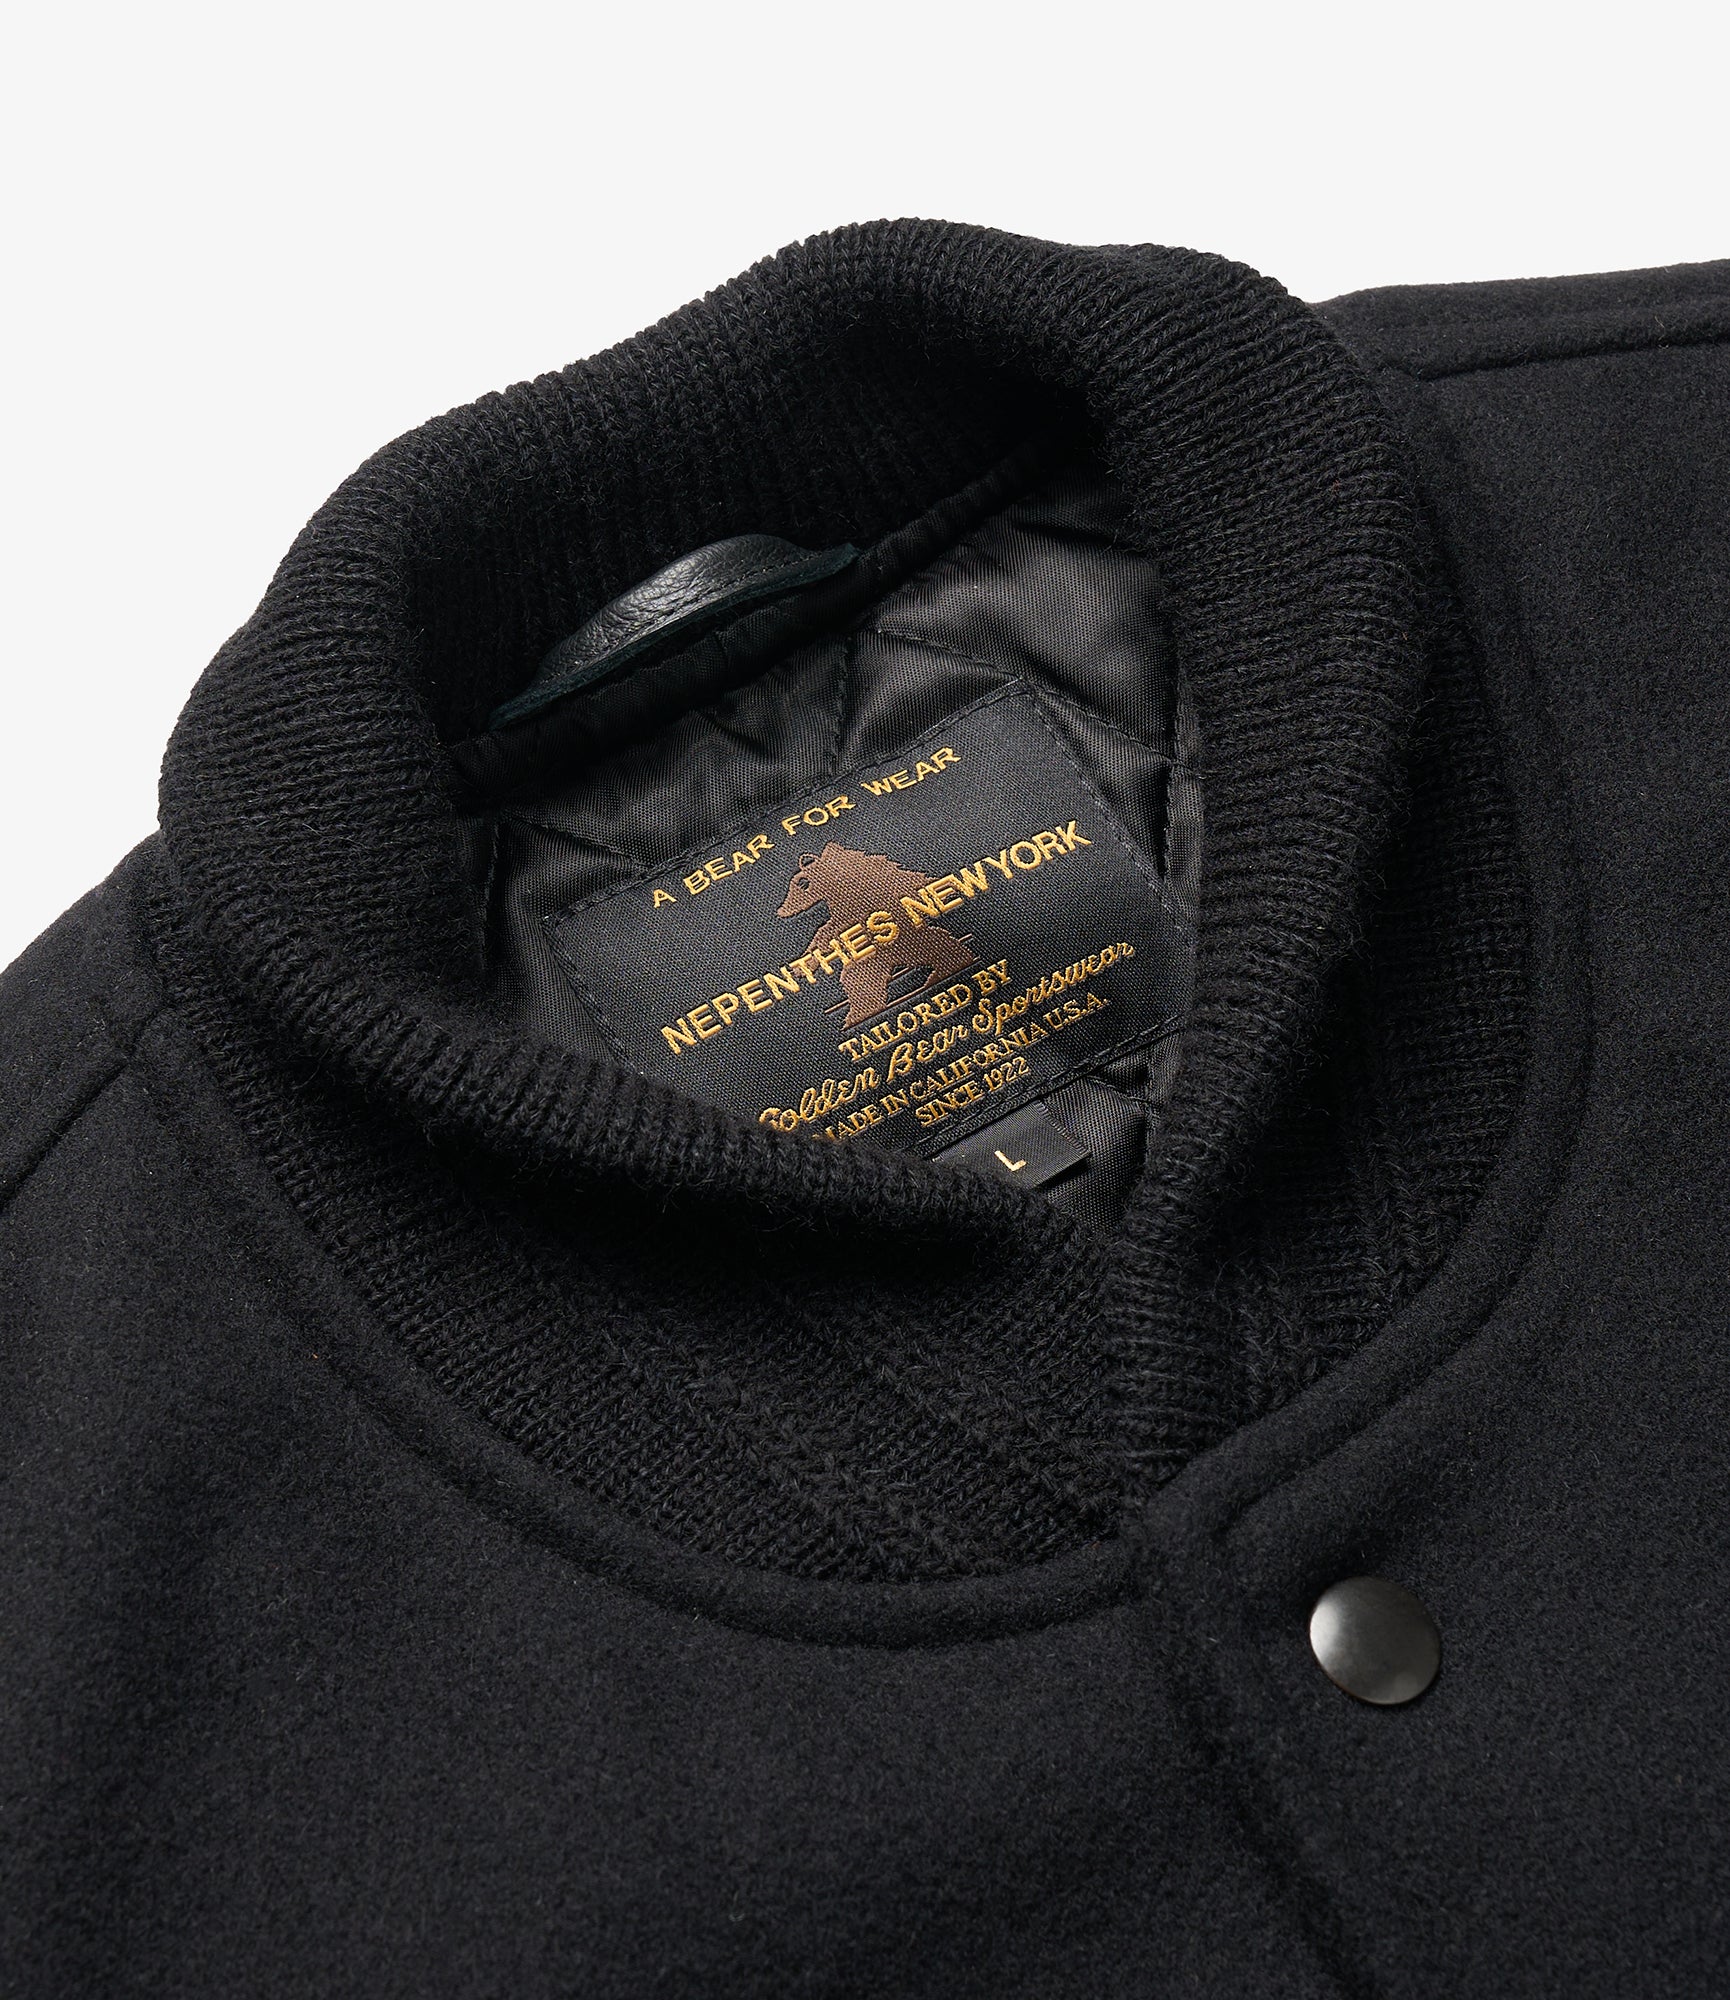 GDP x Golden Bear Varsity Jacket - Black/Black